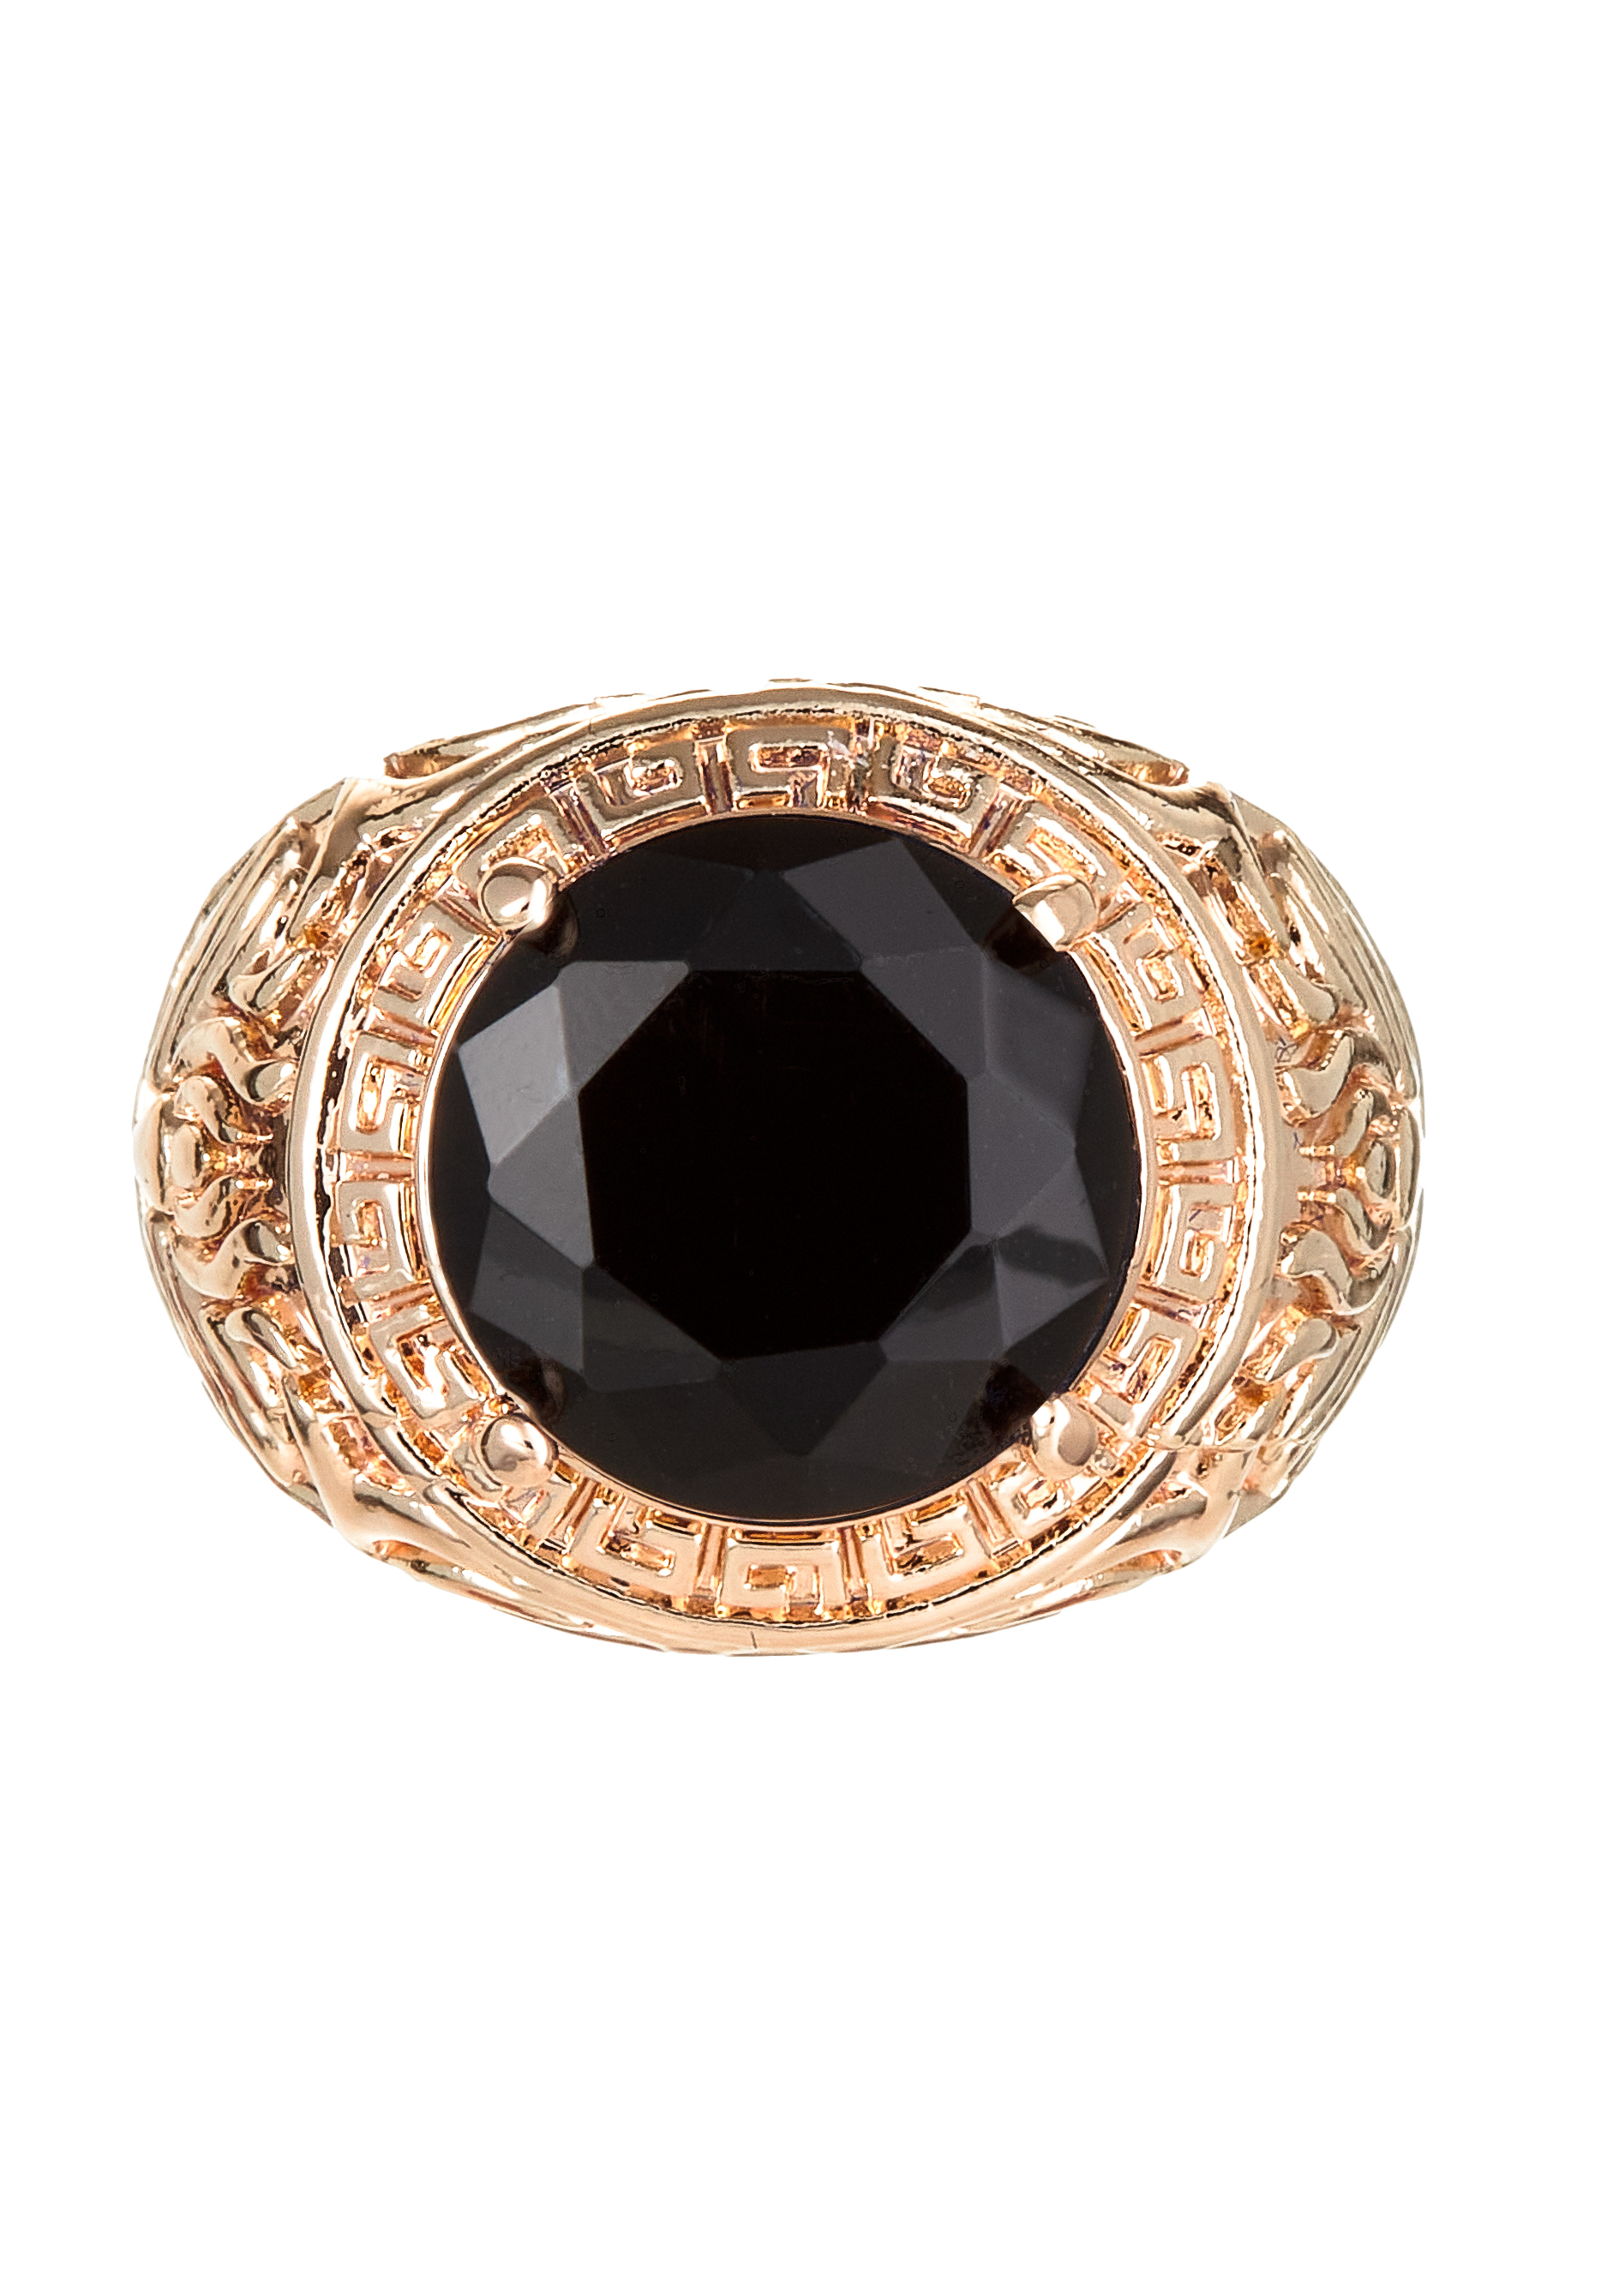 Комплект "Загадочная ночь" Apsara, цвет черный, размер 18 перстень - фото 3